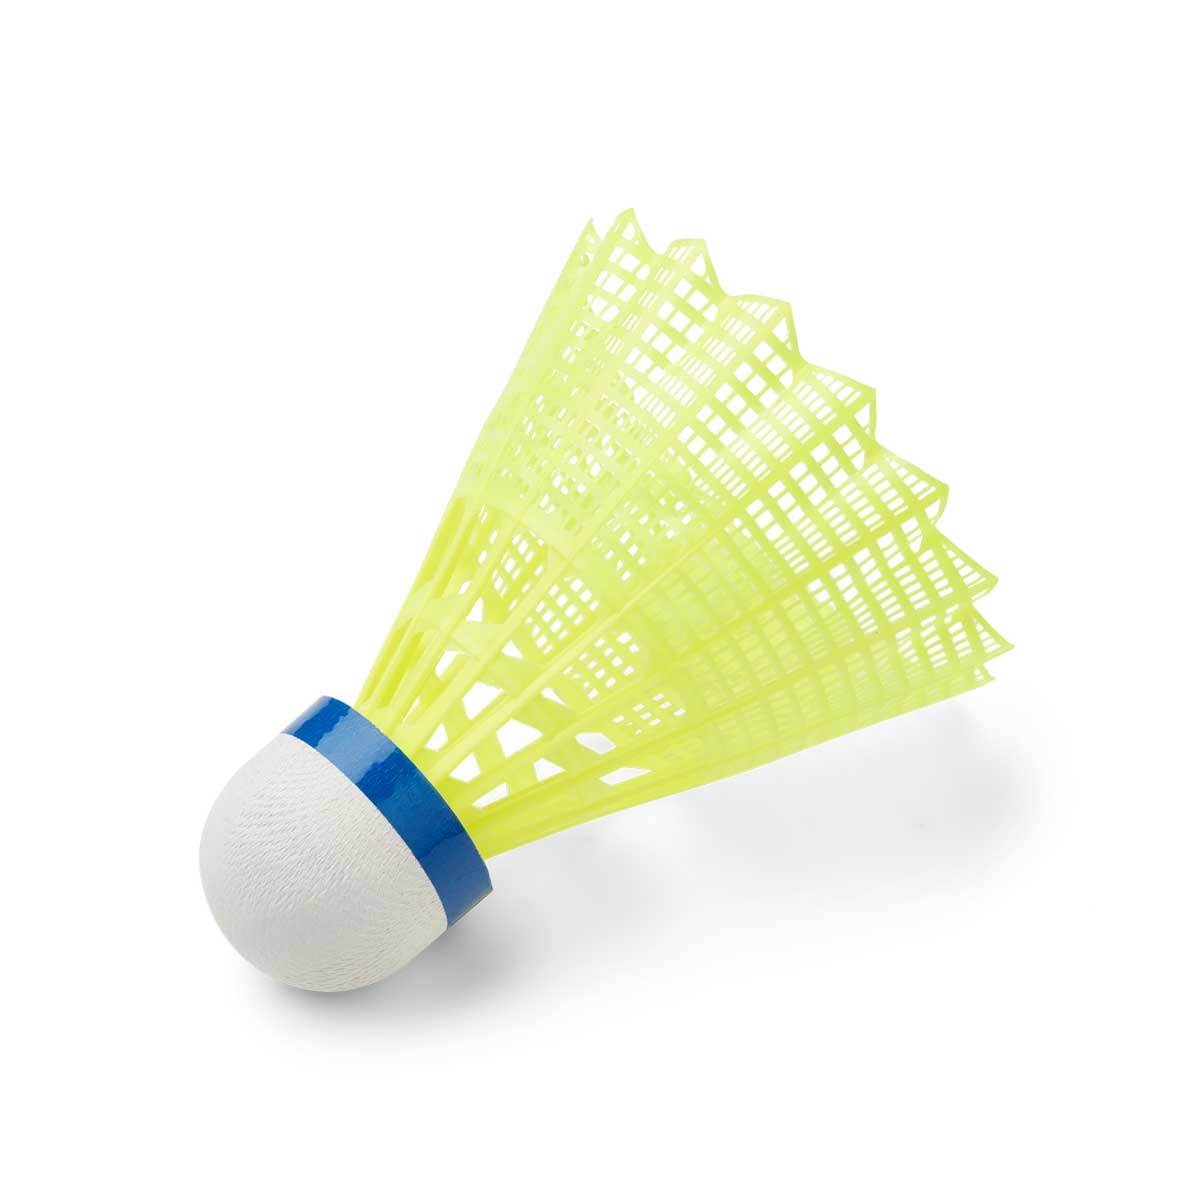 ZERV Super Nova Yellow Badminton shuttles in plastic » Buy